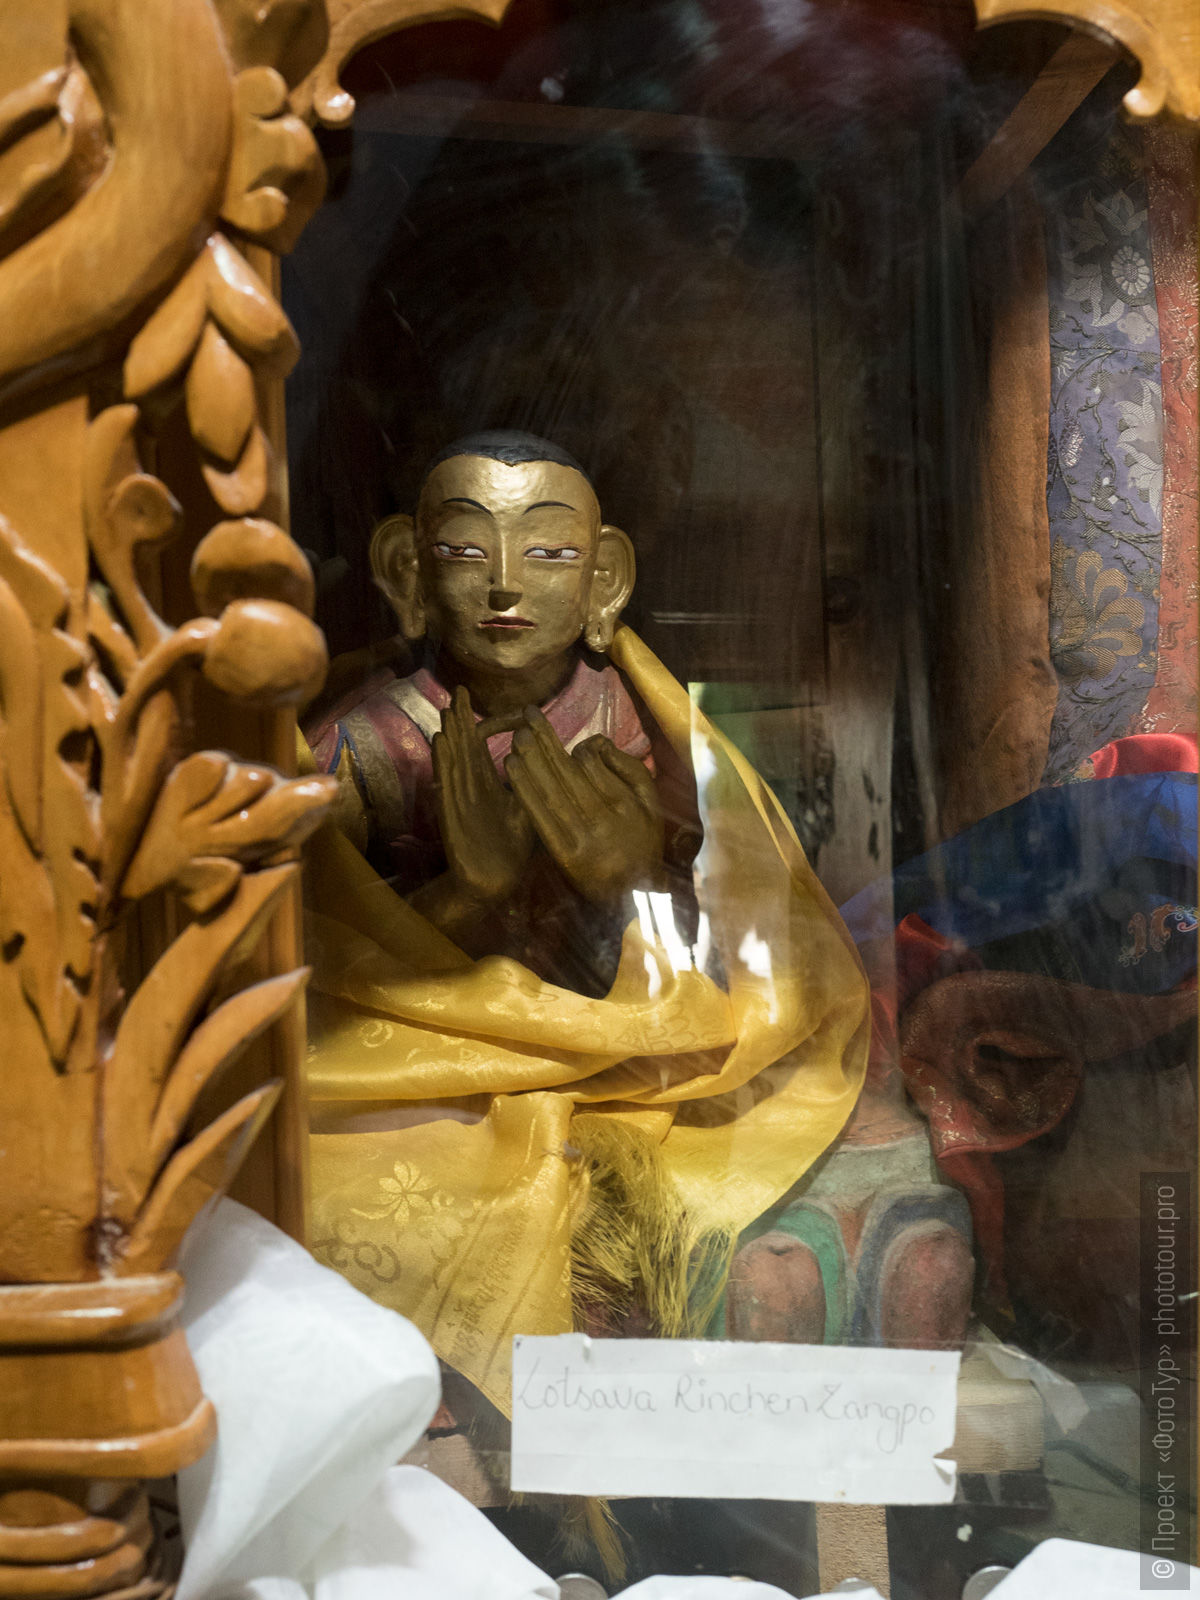 Скульптура Ринчена Зангпо в буддийском монастыре Алчи Гонпа, Ладакх.